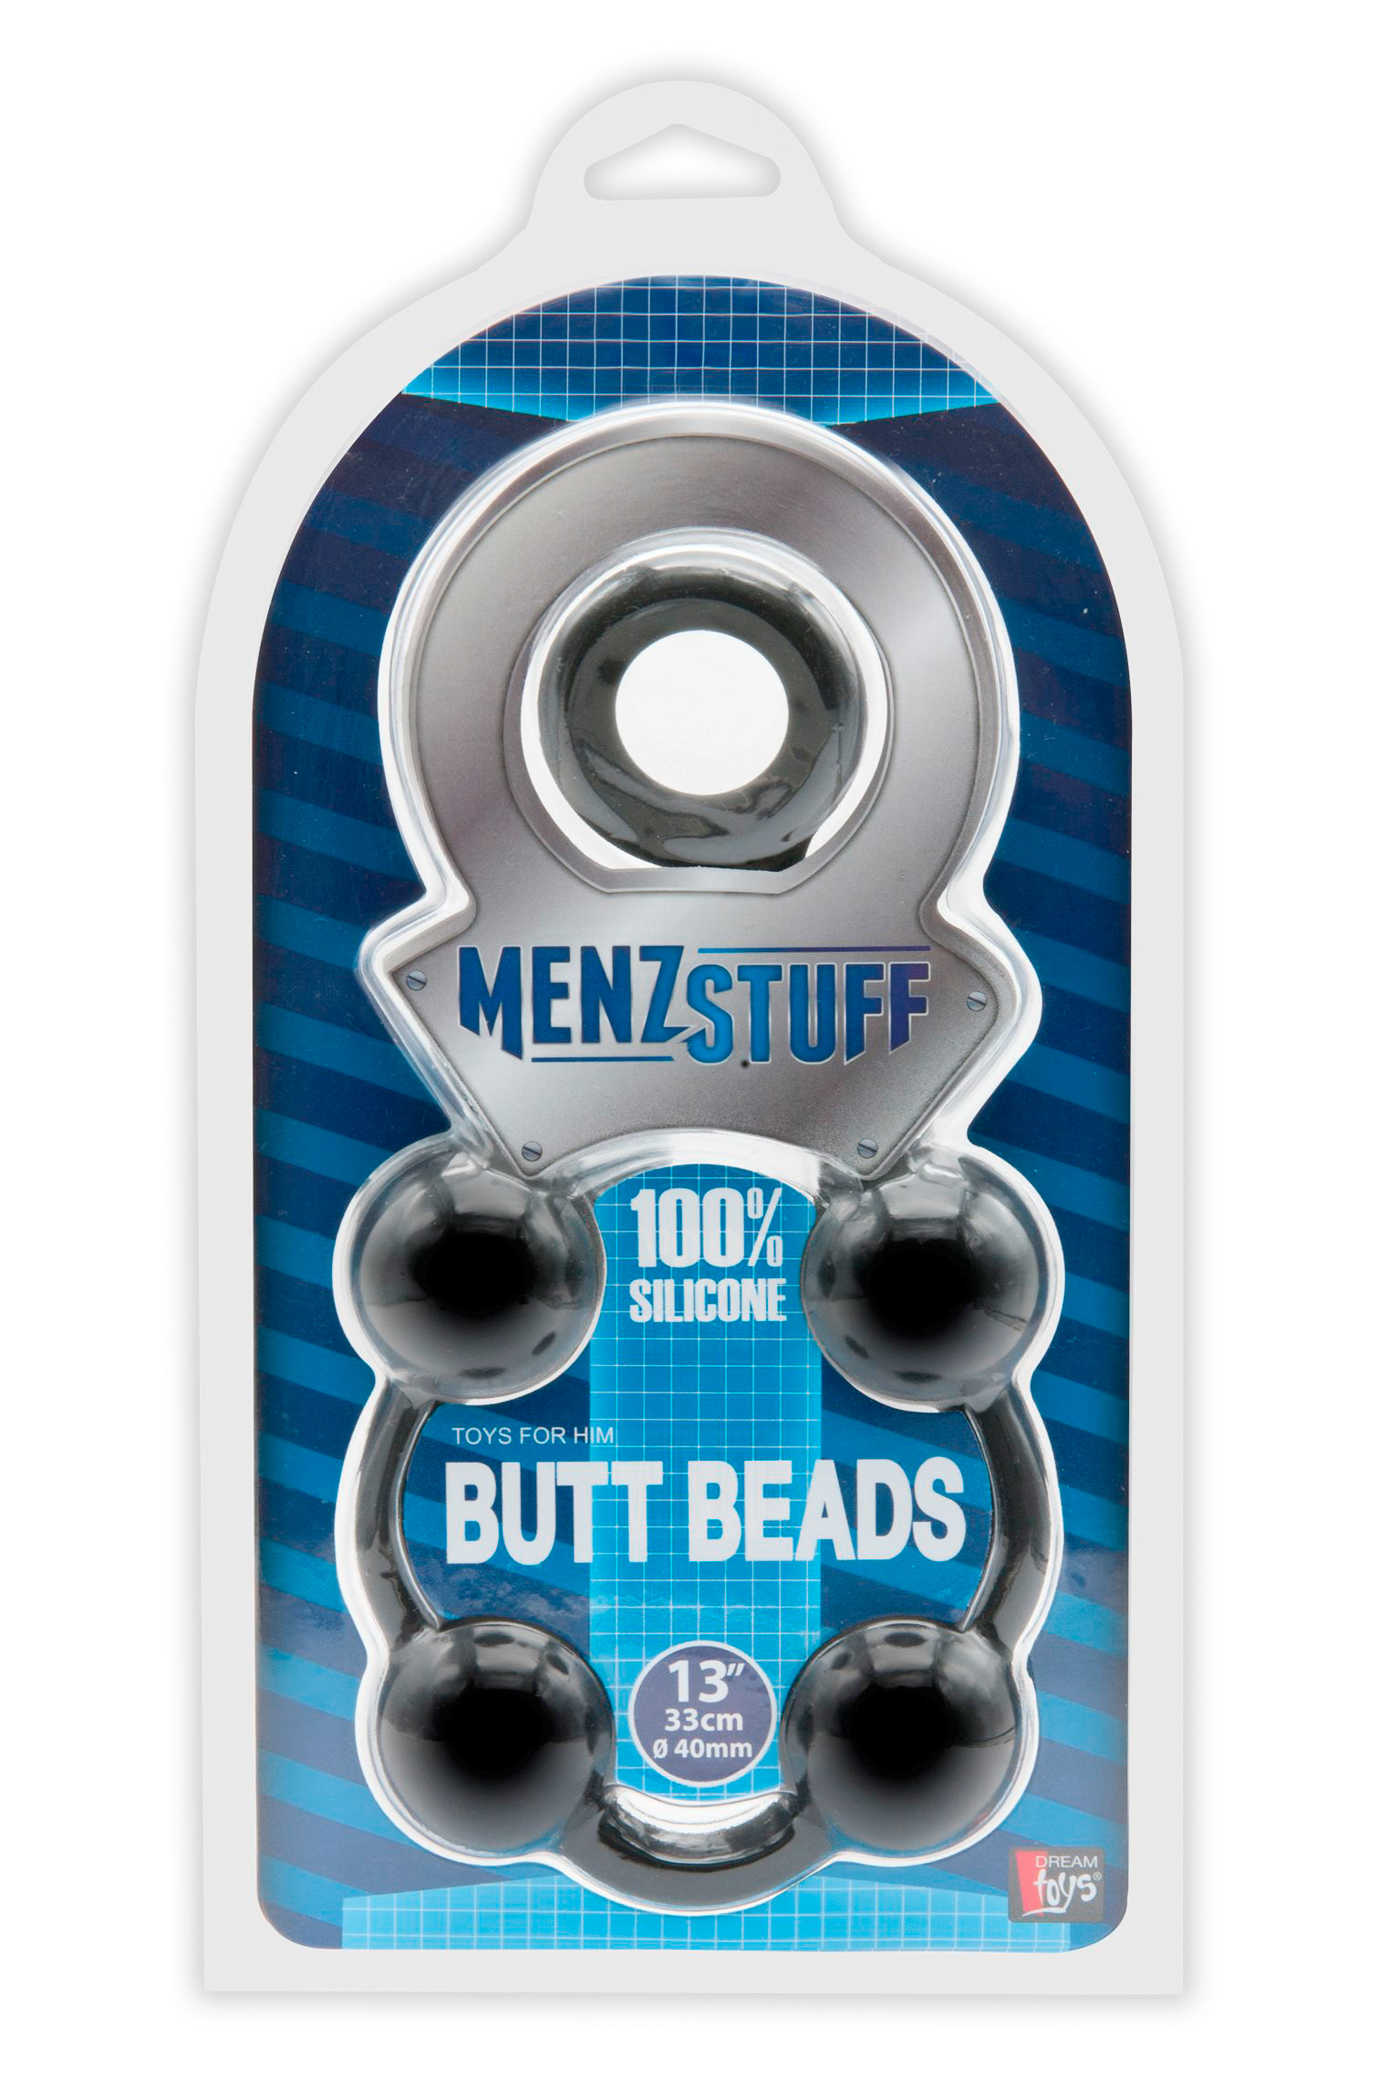 Butt beads